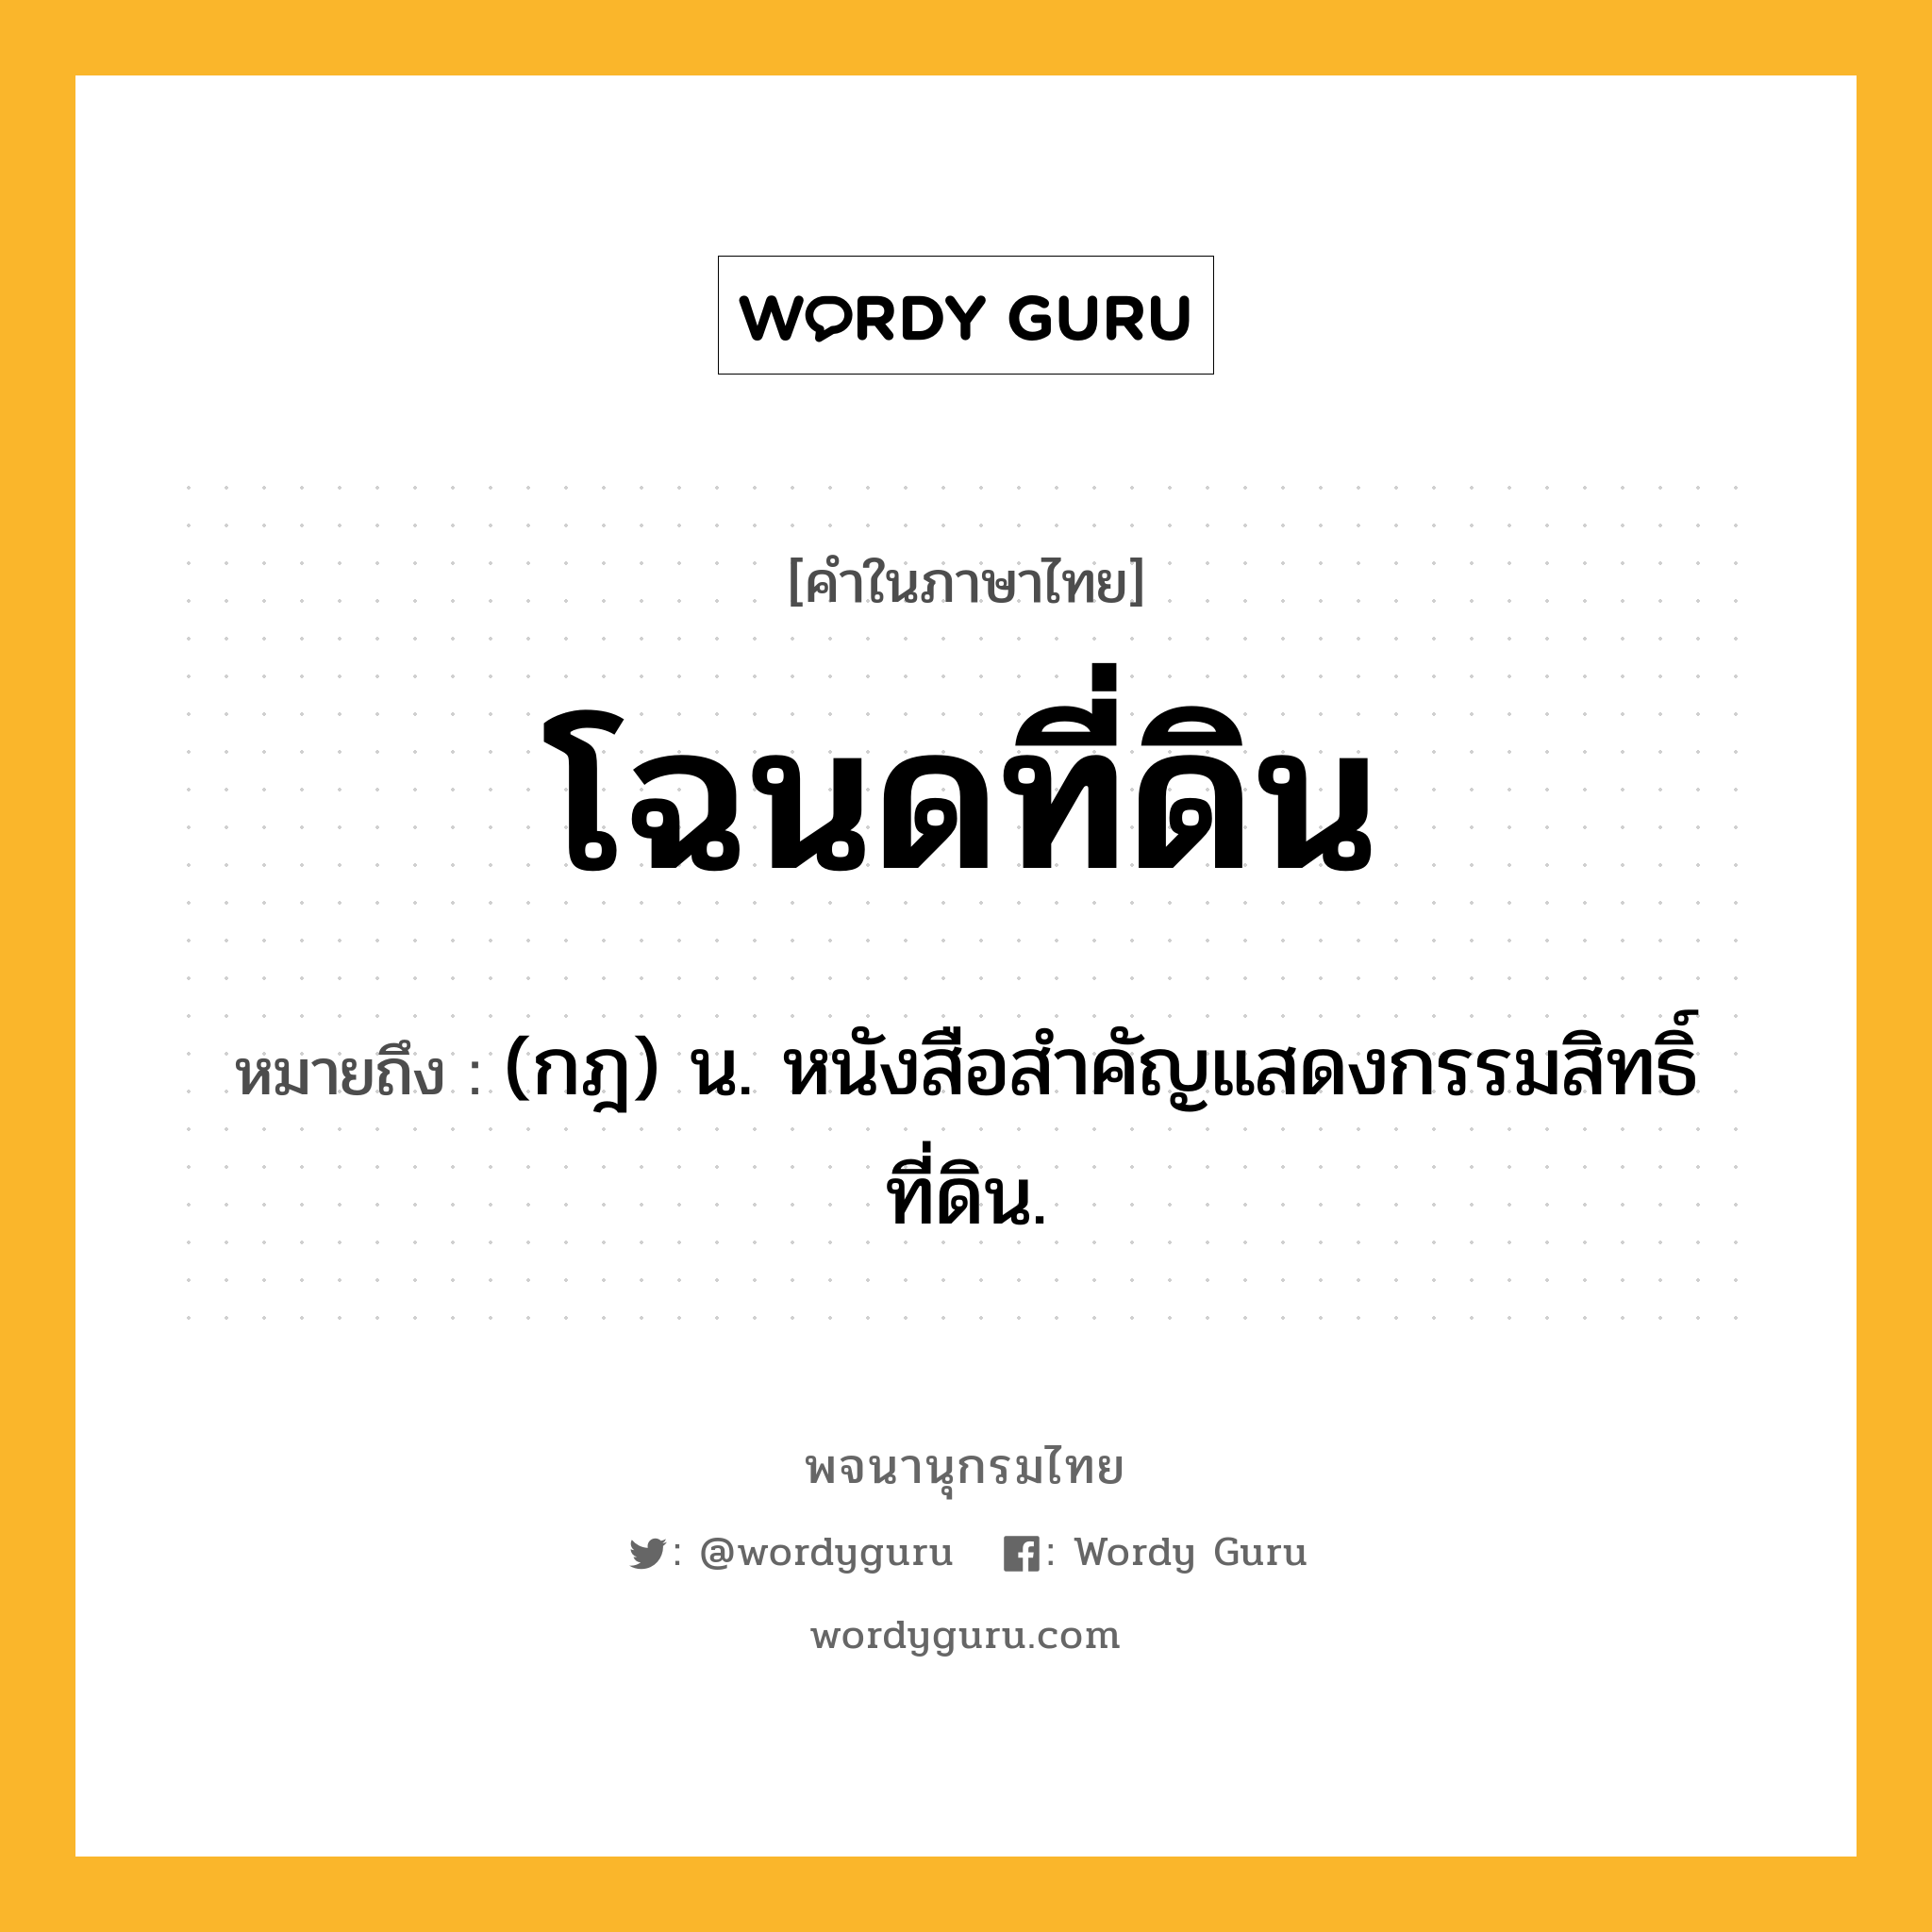 โฉนดที่ดิน ความหมาย หมายถึงอะไร?, คำในภาษาไทย โฉนดที่ดิน หมายถึง (กฎ) น. หนังสือสำคัญแสดงกรรมสิทธิ์ที่ดิน.